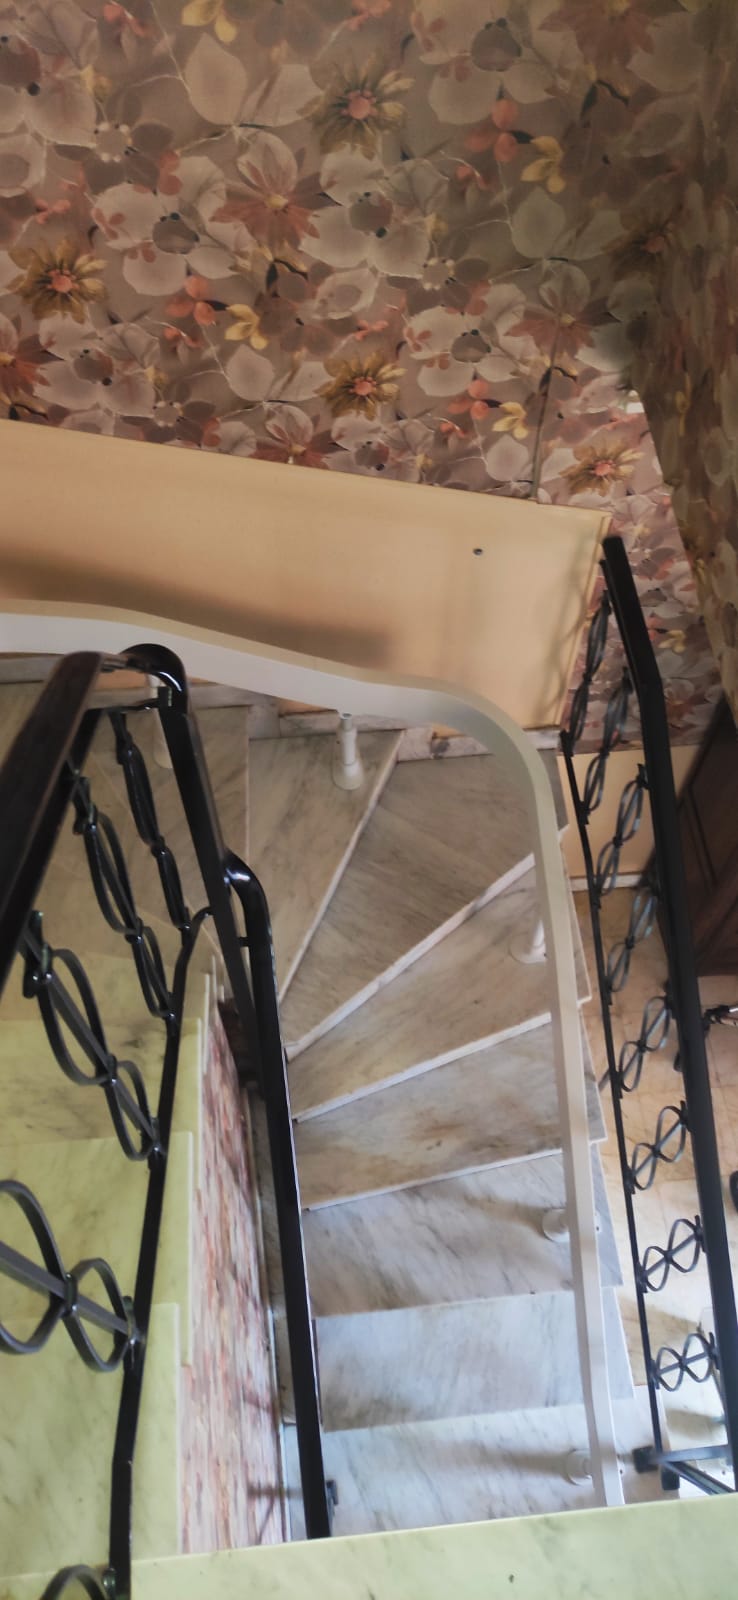 Installation d'un monte-escalier courbe intérieur Acorn à Pau